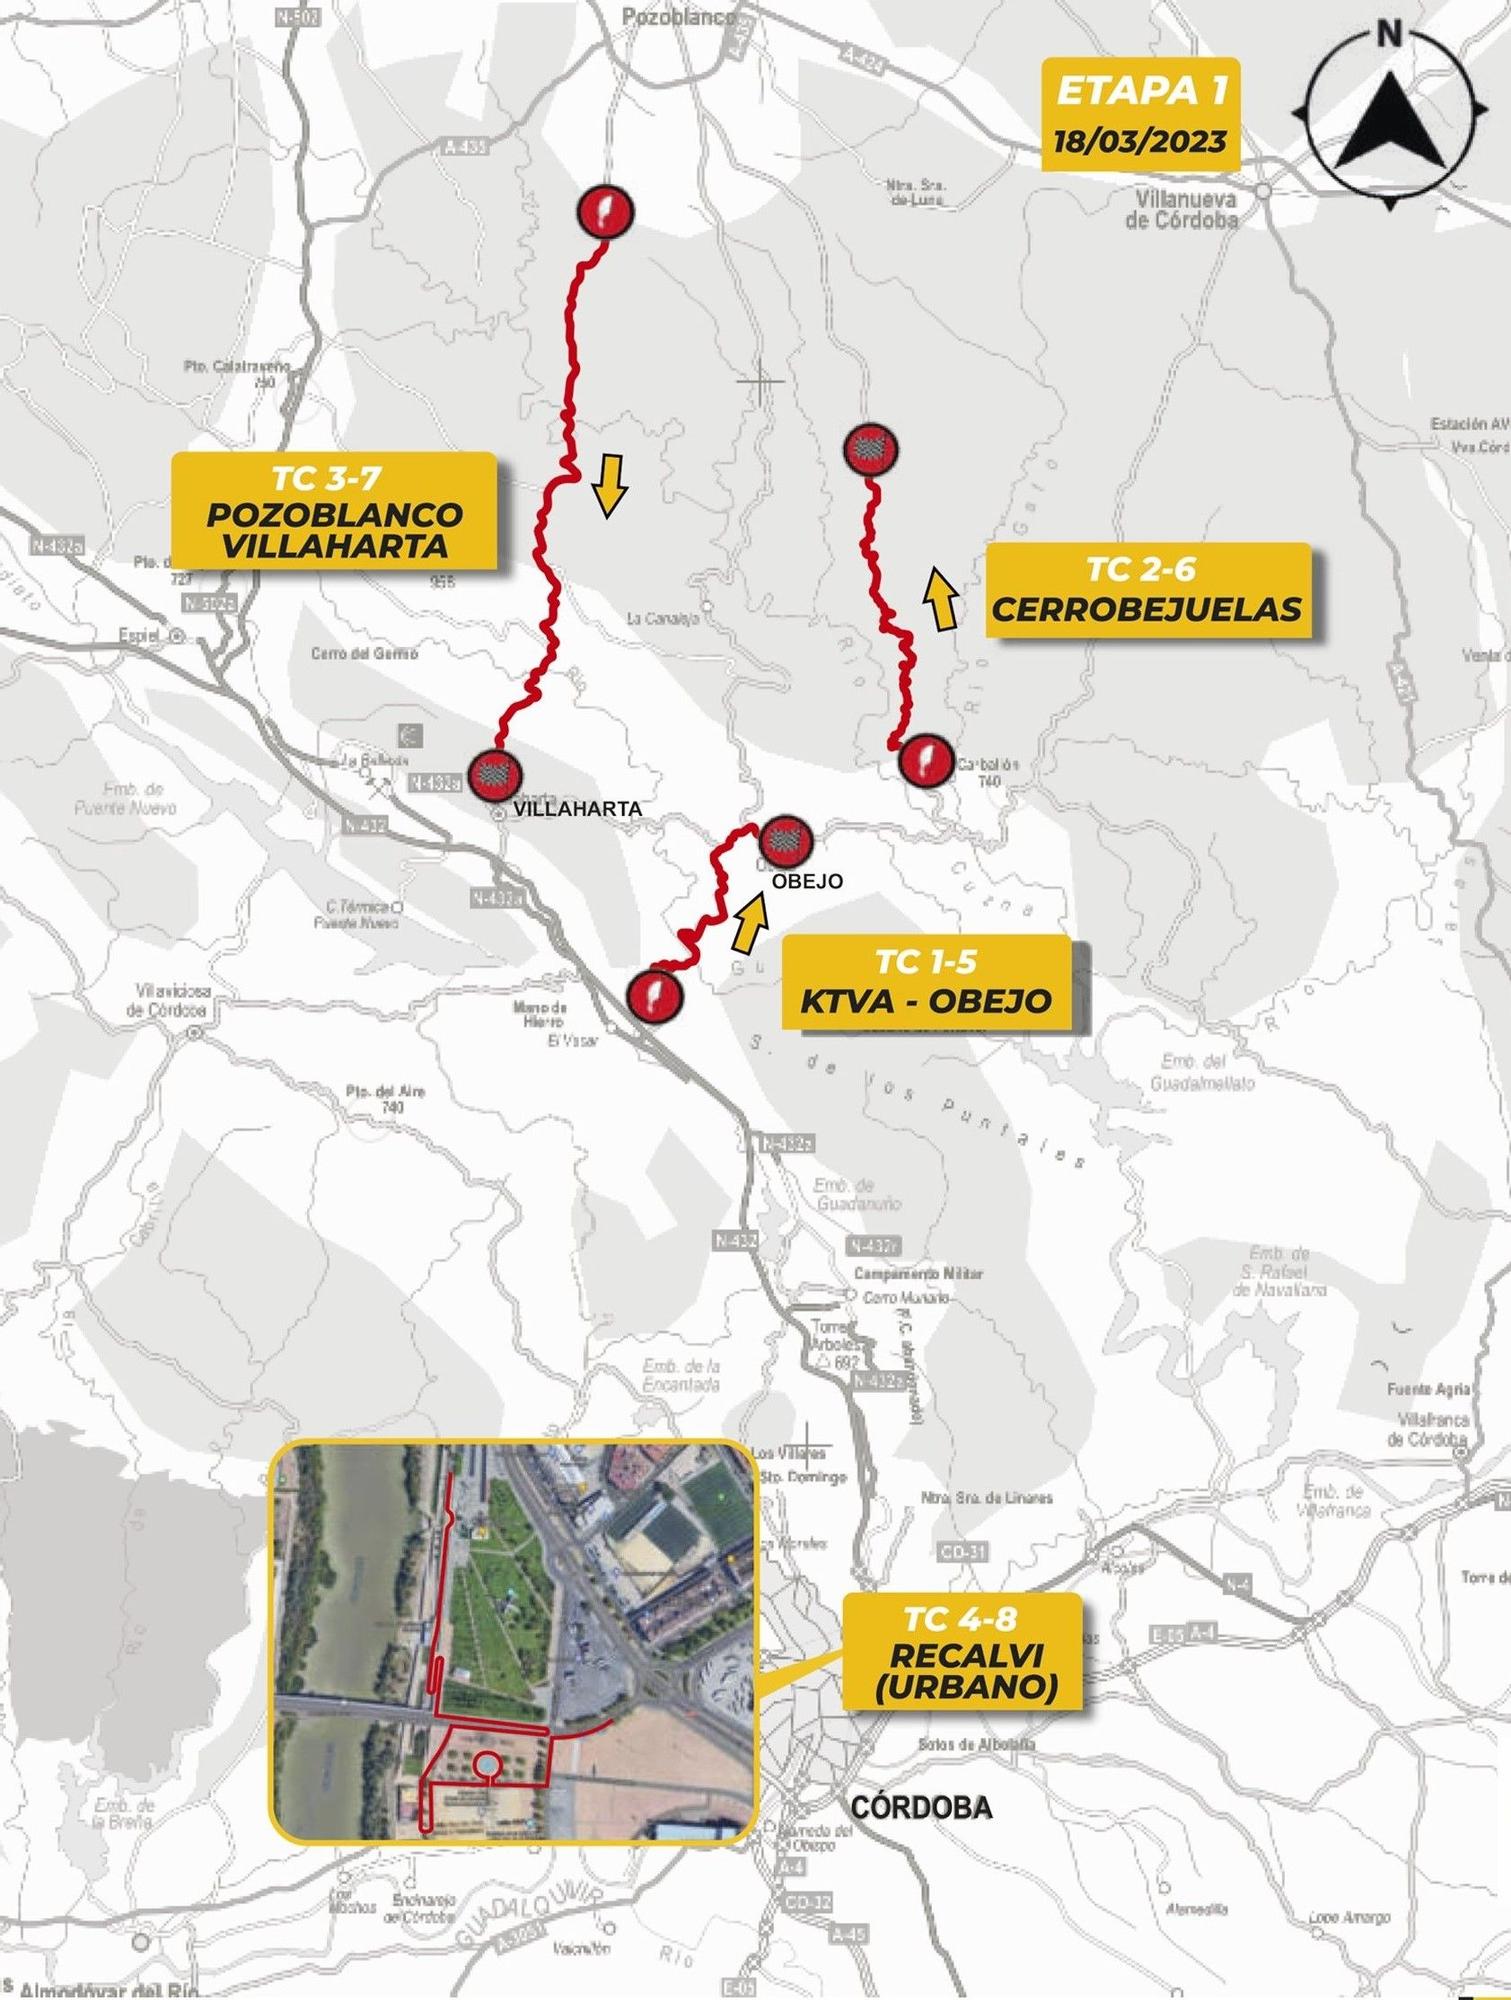 Hoja de ruta de la Etapa 1 del Rali Sierra Morena 2023.